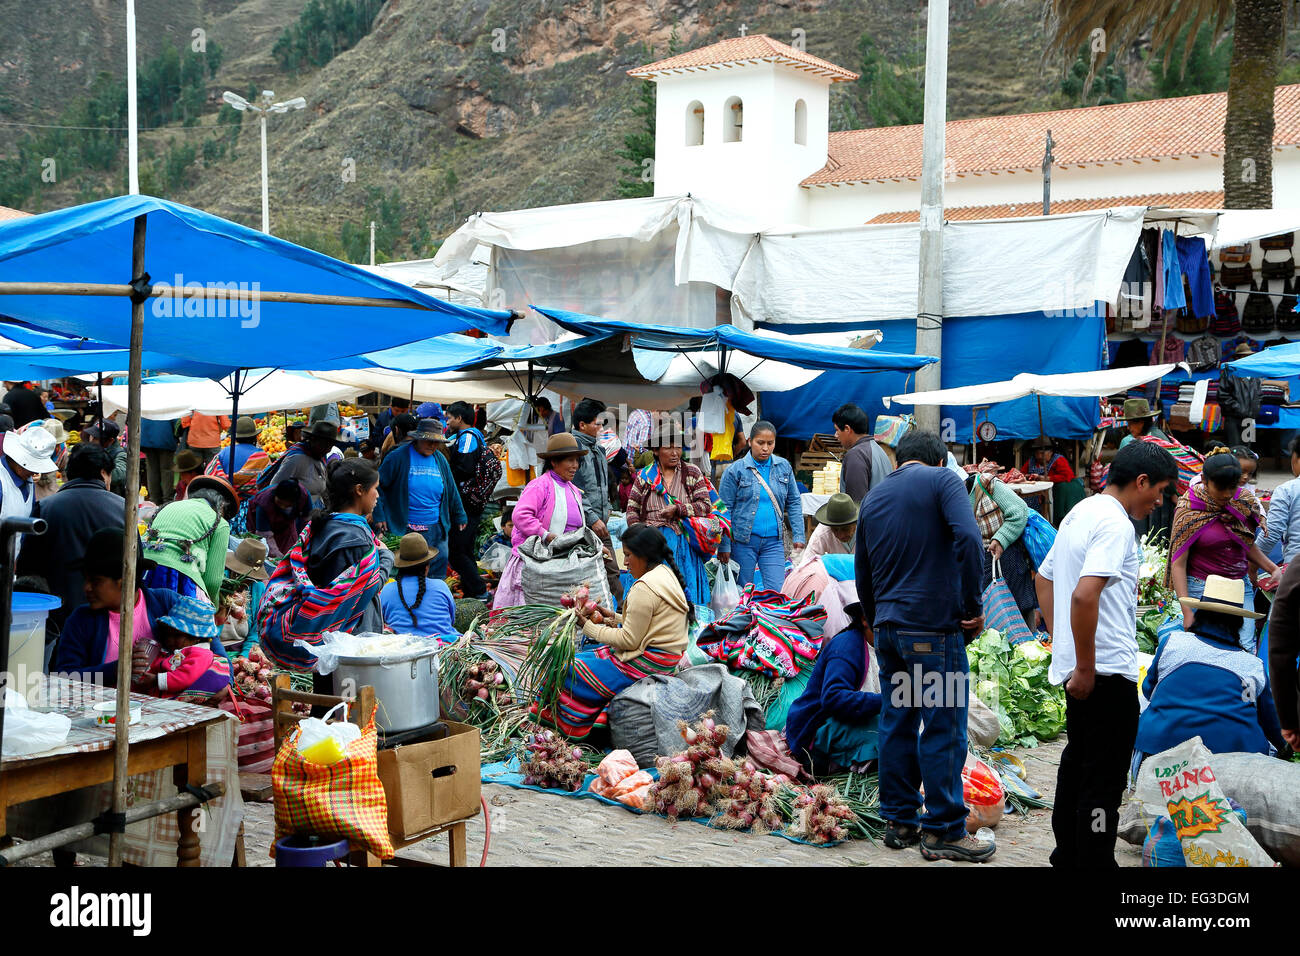 Calage du vendeur et San Pedro Apostol (St. L'Apôtre Pierre), l'église le dimanche, le marché de Pisac Cusco, Pérou Banque D'Images